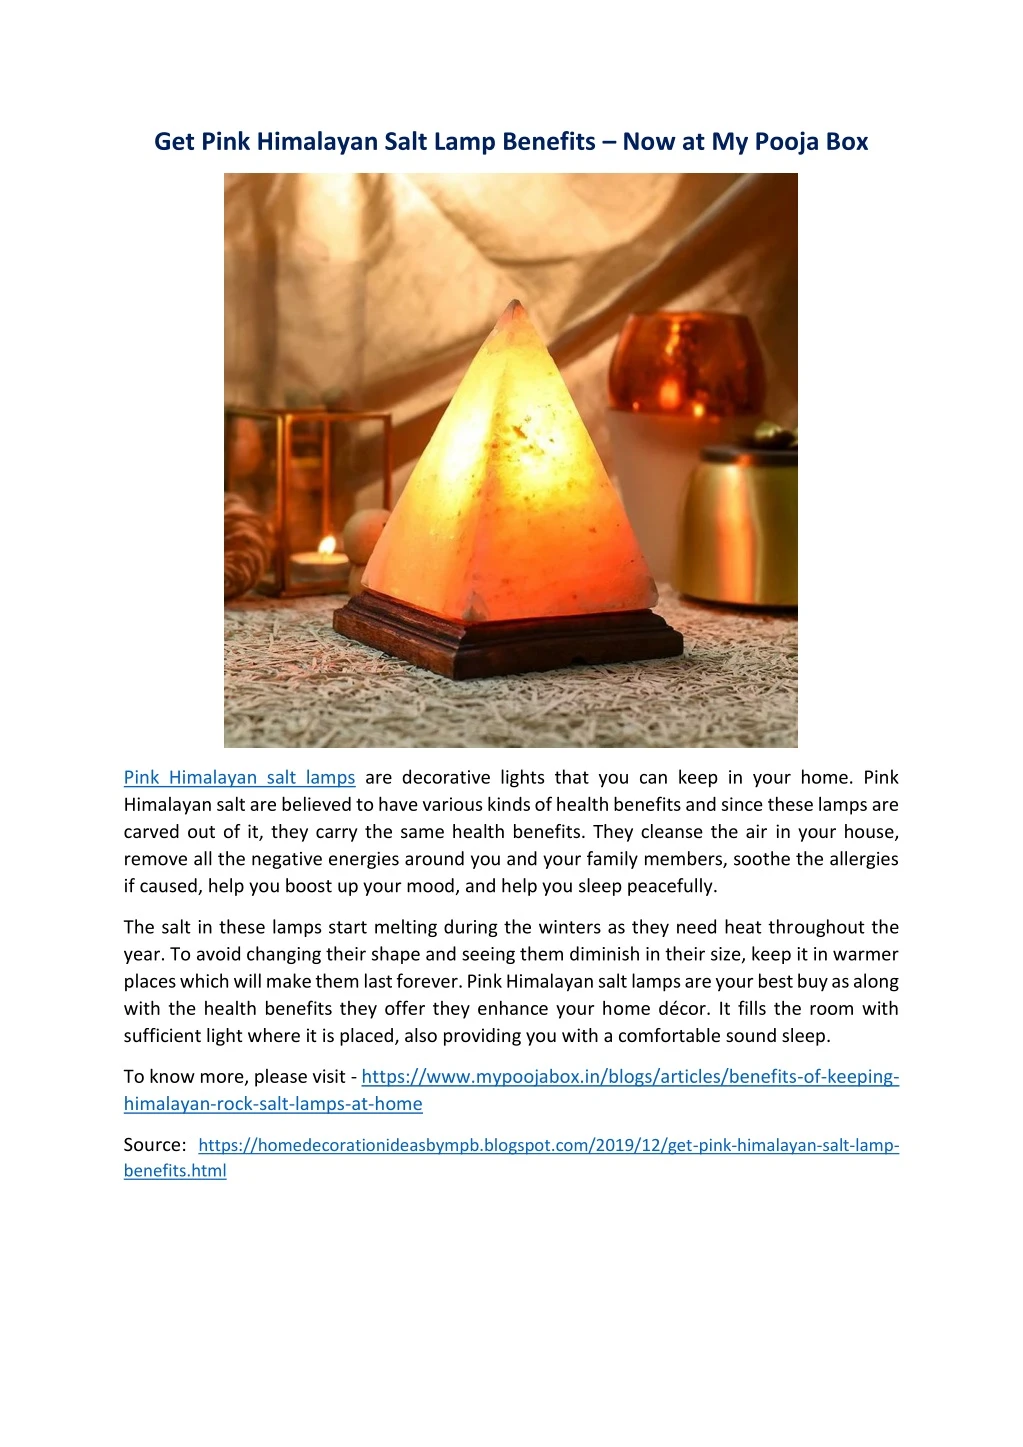 get pink himalayan salt lamp benefits